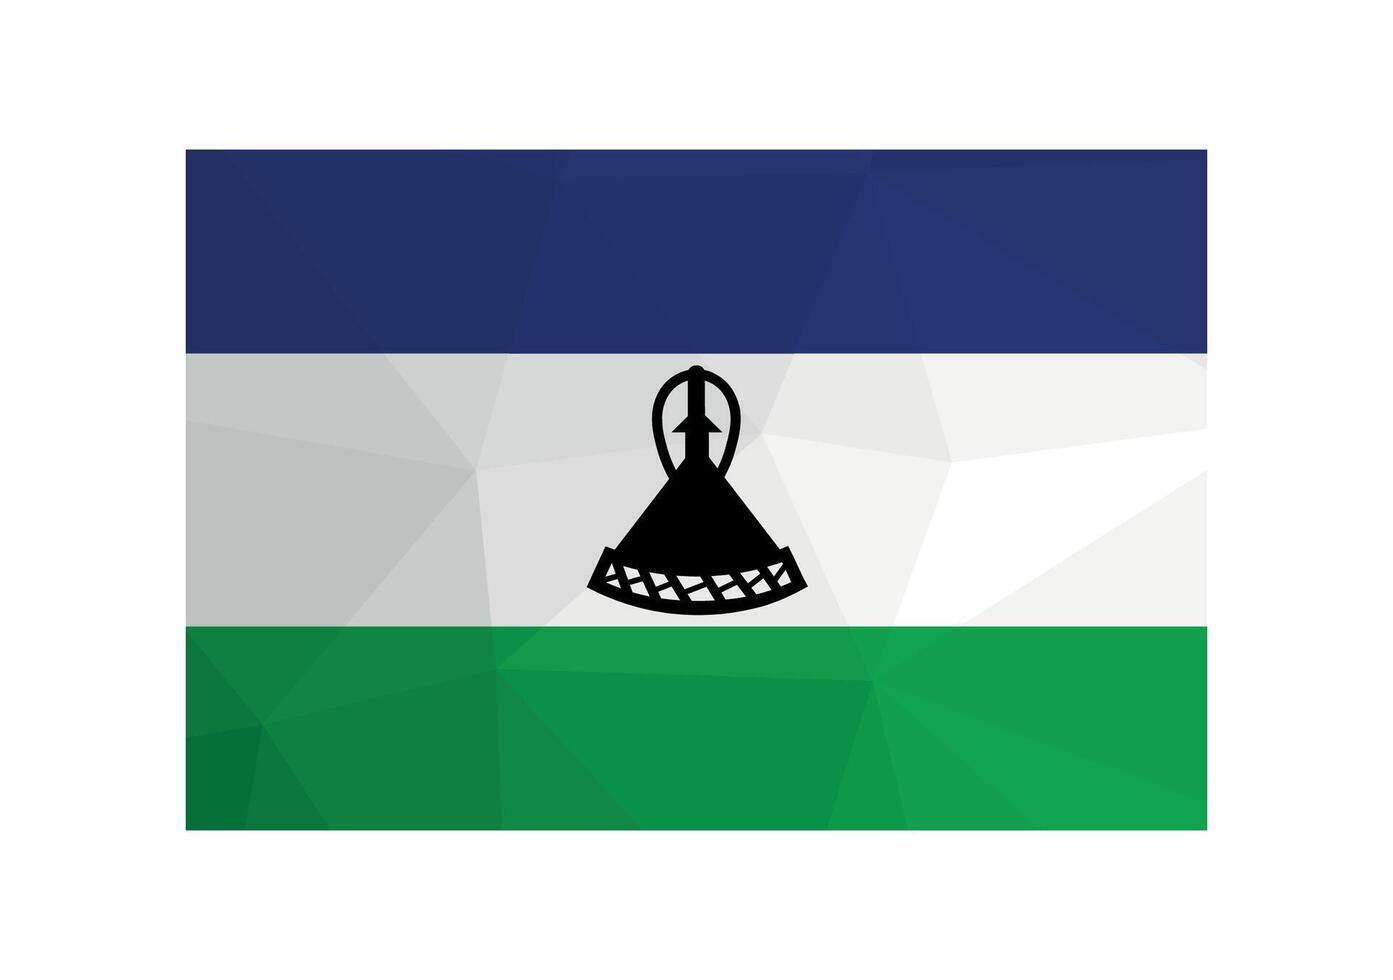 vektor illustration. officiell symbol av lesotho. nationell flagga i blå, vit, grön färger och svart hatt. kreativ design i låg poly stil med triangel- former.